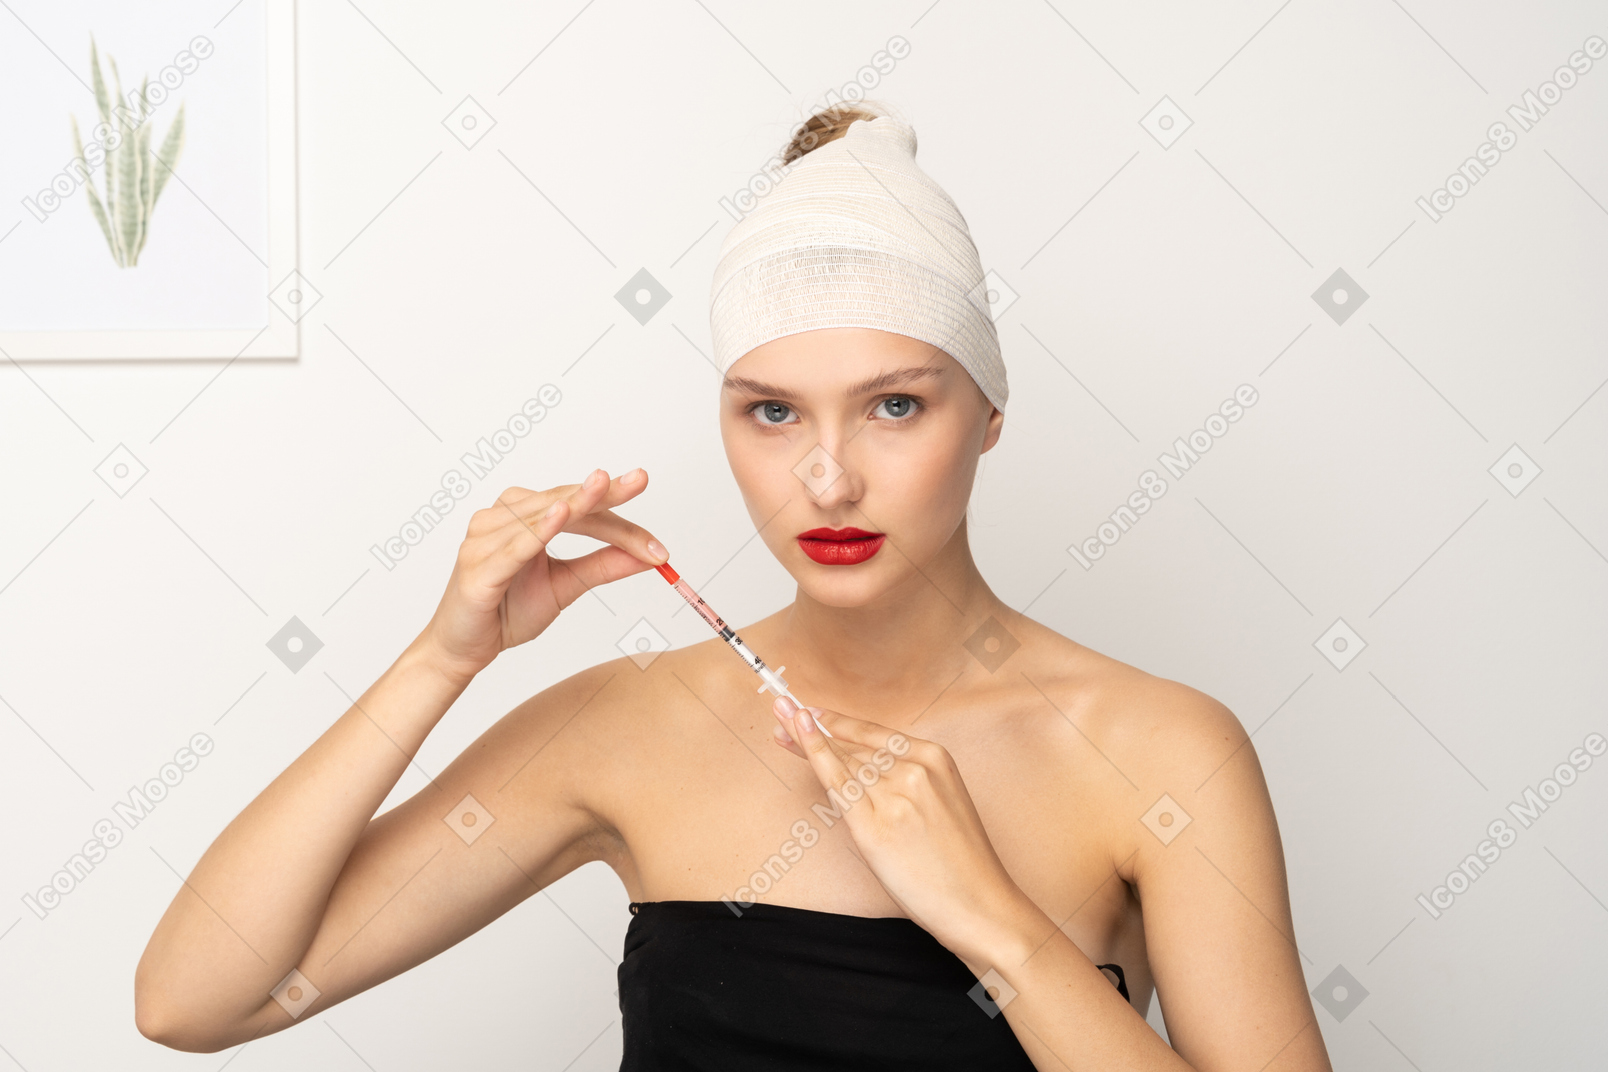 Giovane donna con la testa bendata che tiene la siringa